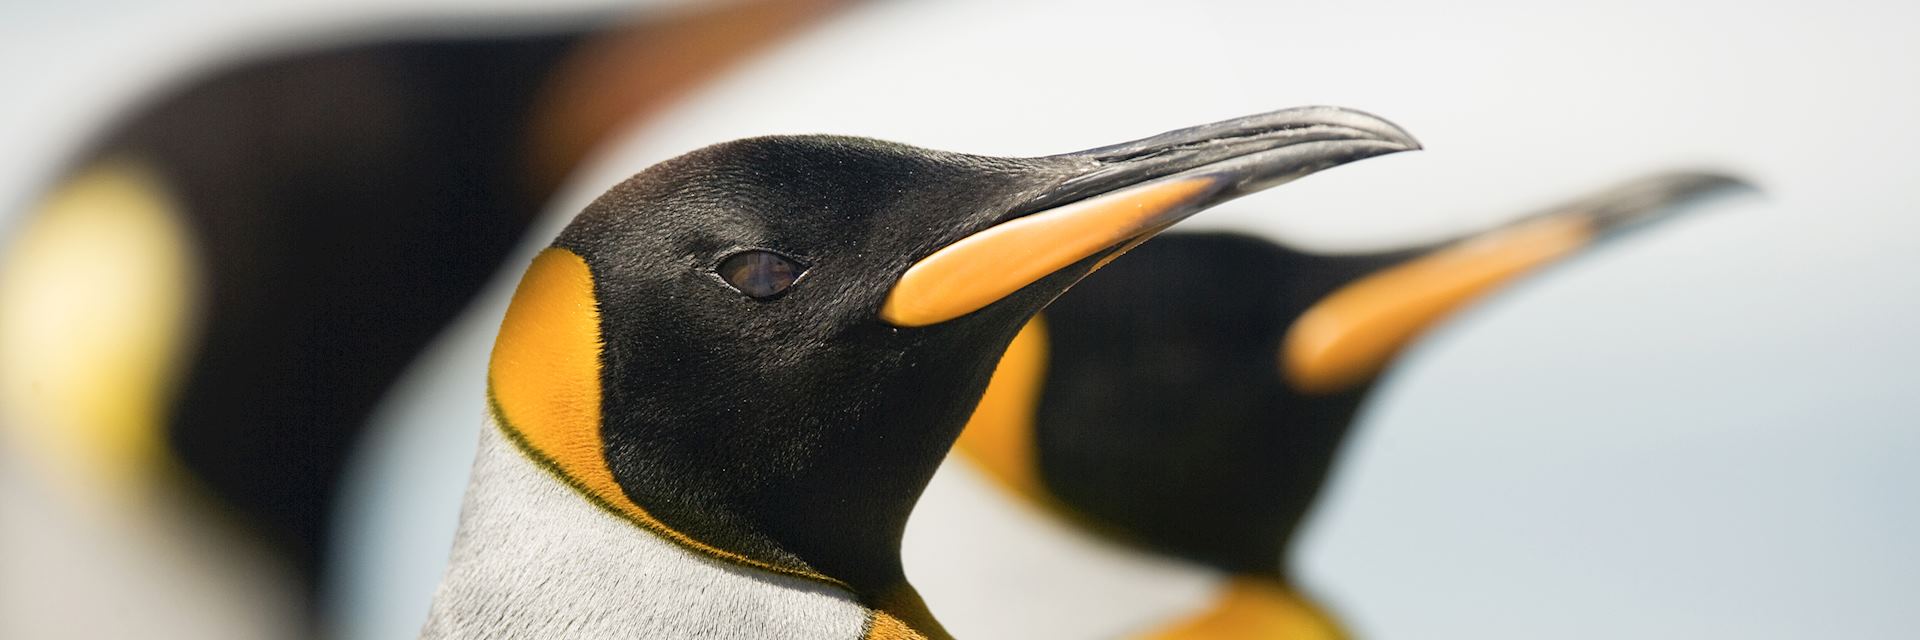 King pengins, Falkland Islands